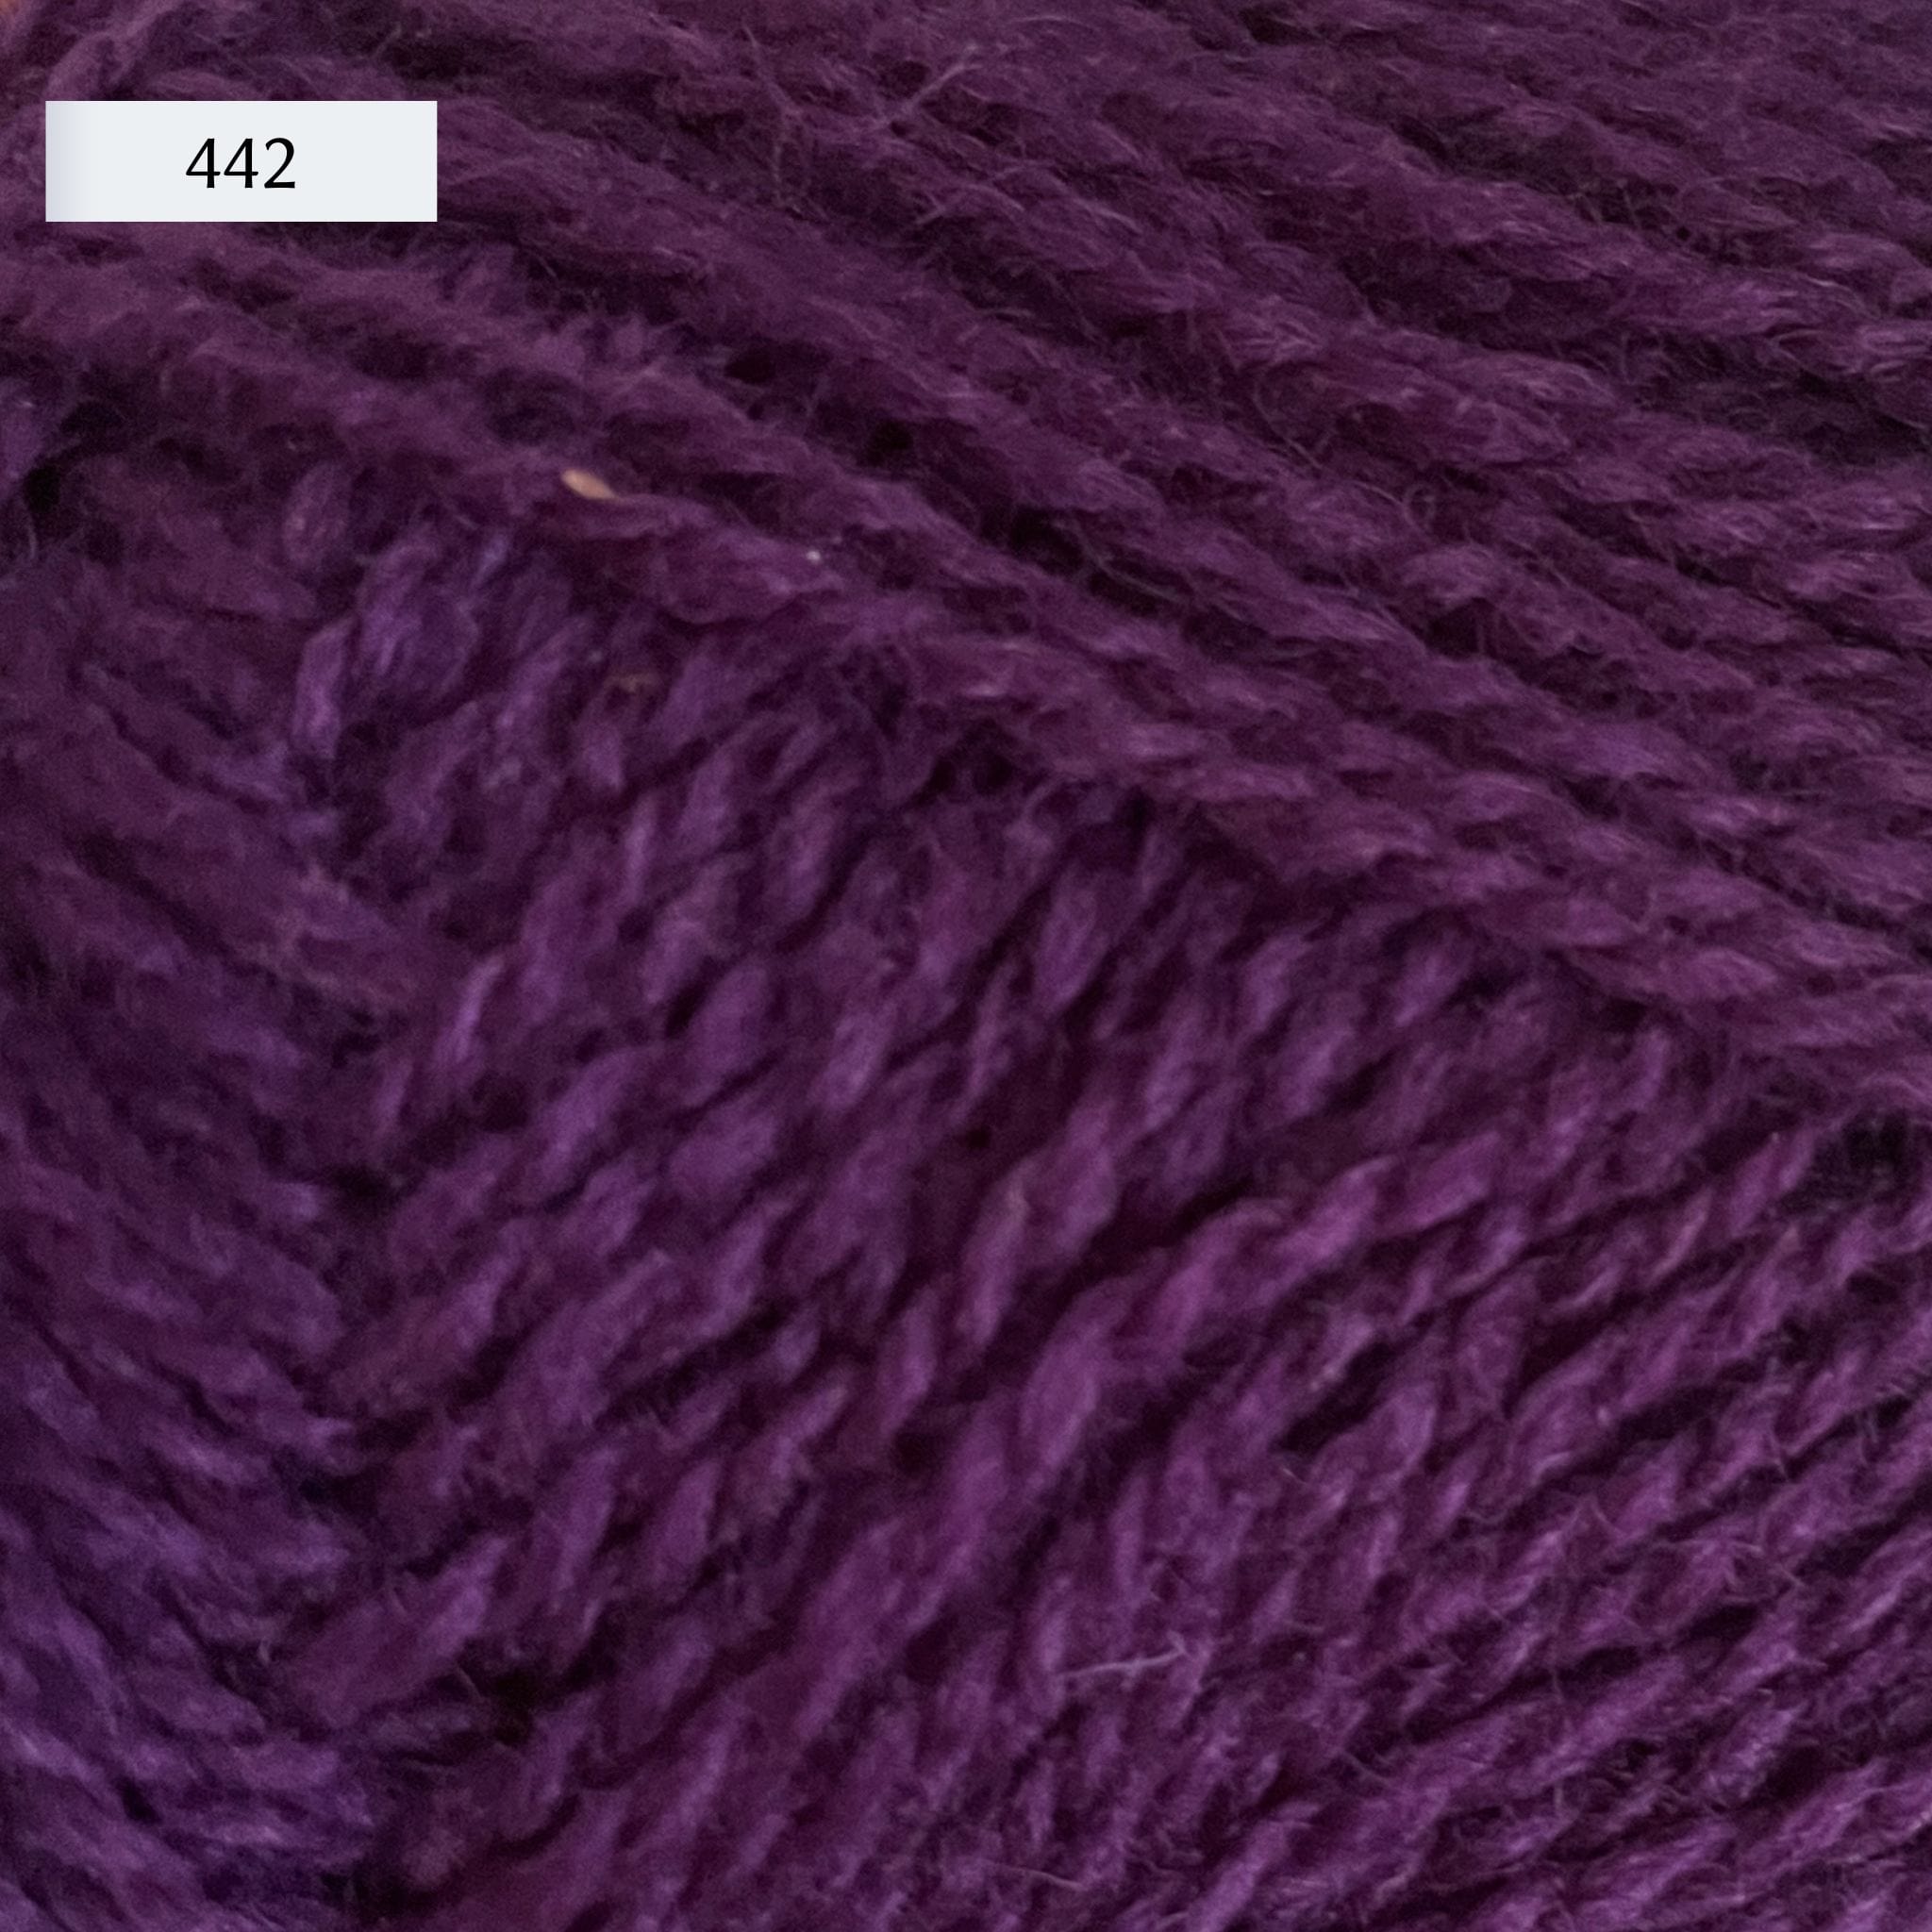 Rauma Finullgarn, a fingering/sport weight yarn, in color 442, a warm purple